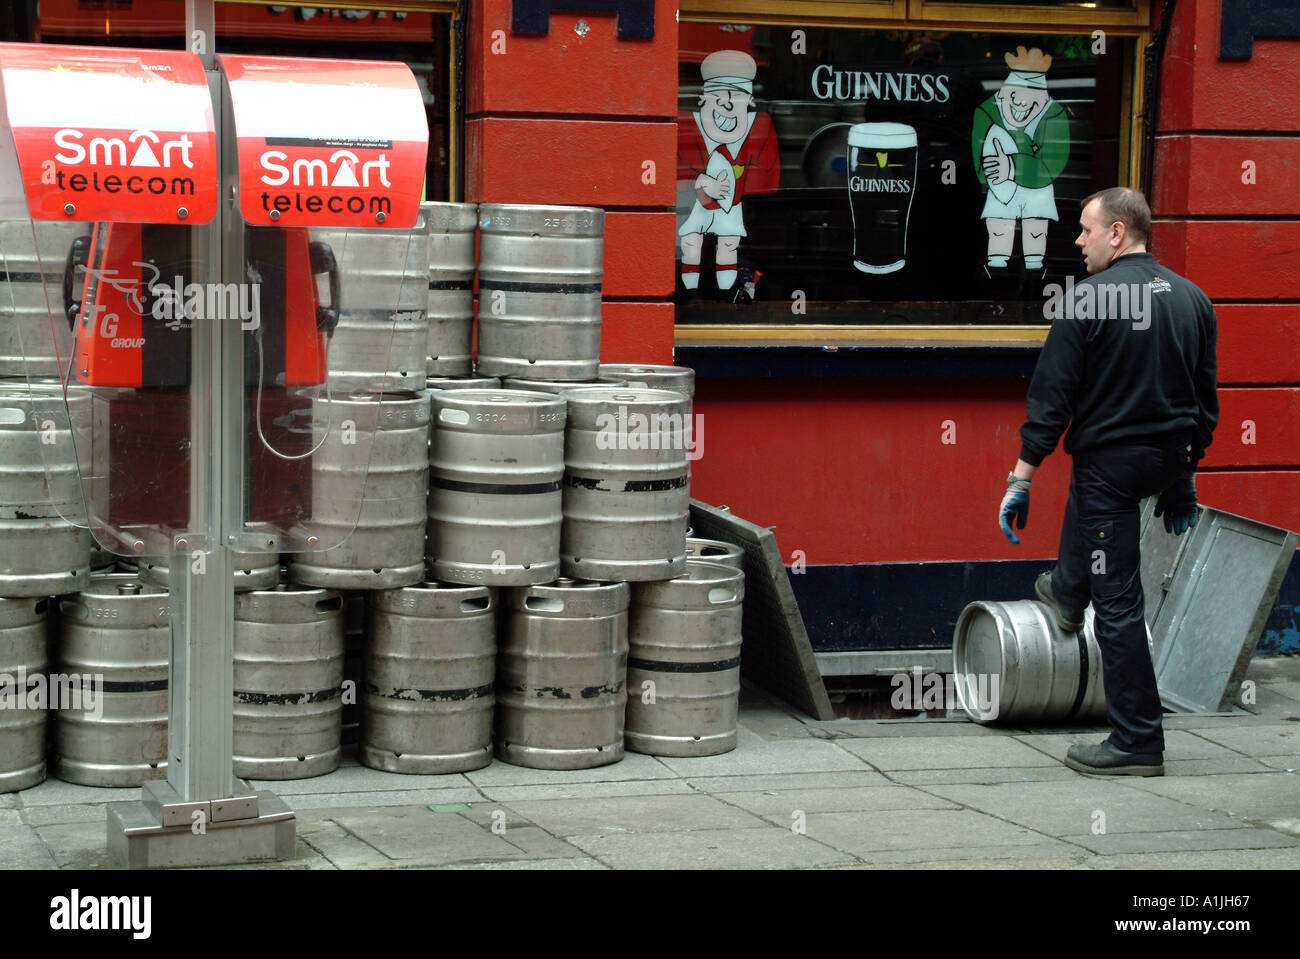 La prestation de barils de bière Drayman en cave de pub de Temple Bar Dublin Irlande du sud Eire Banque D'Images